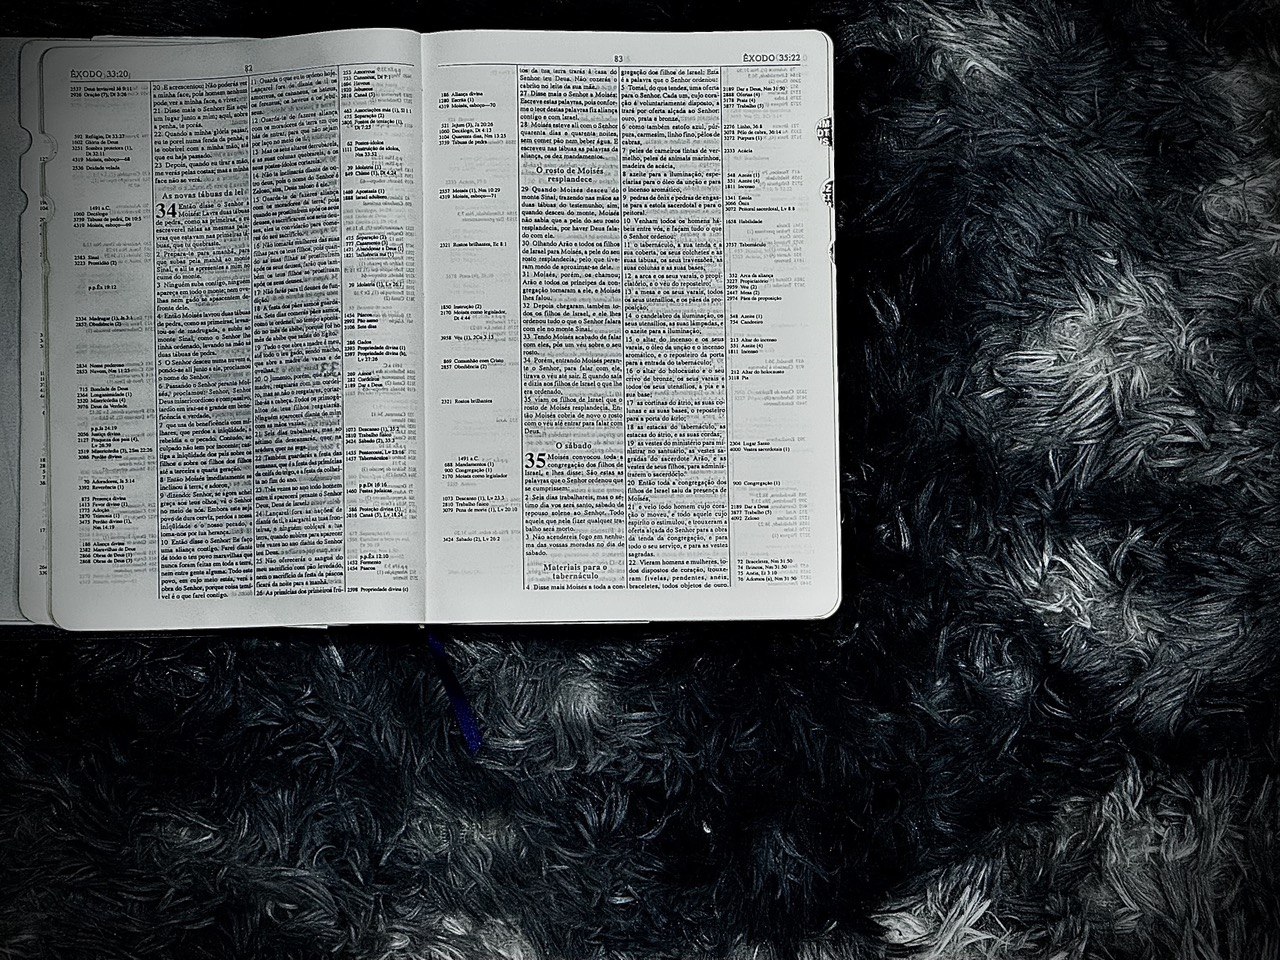 Bíblia aberta em êxodo 34, representando o estudo de Êxodo 34. Imagem apenas decorativa.